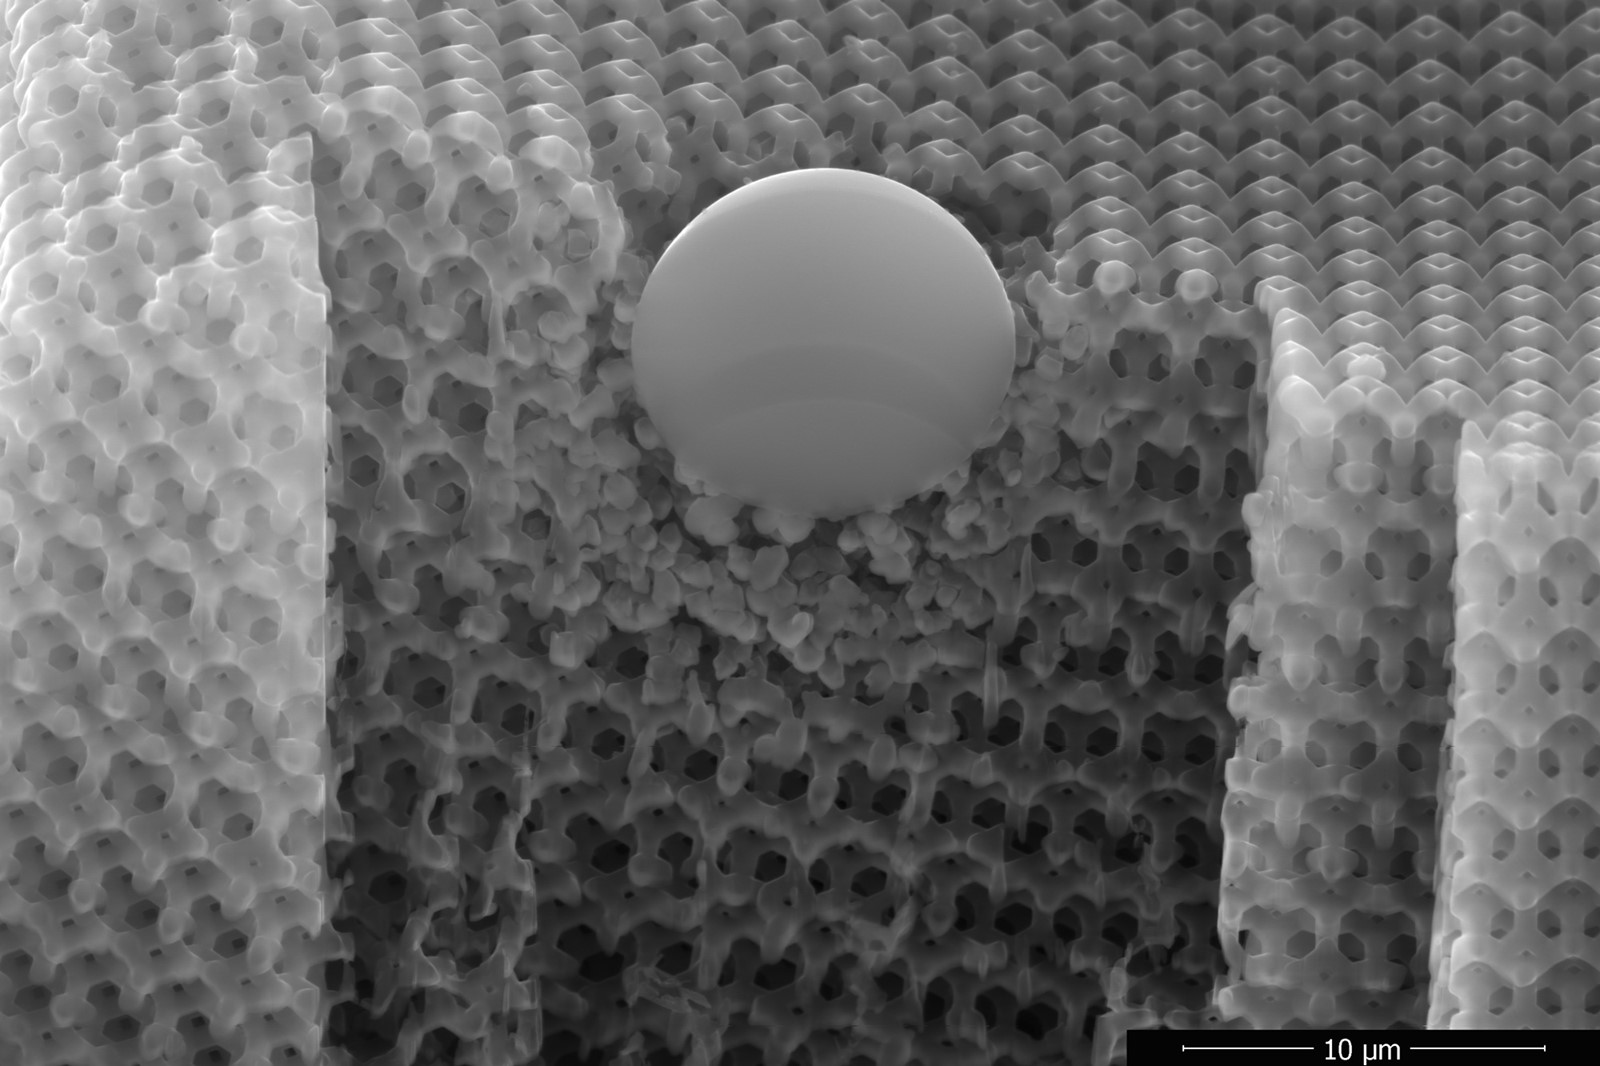 Novi nano materijal otporniji na udare projektila nego kevlar -  Istraživanja @ Bug.hr